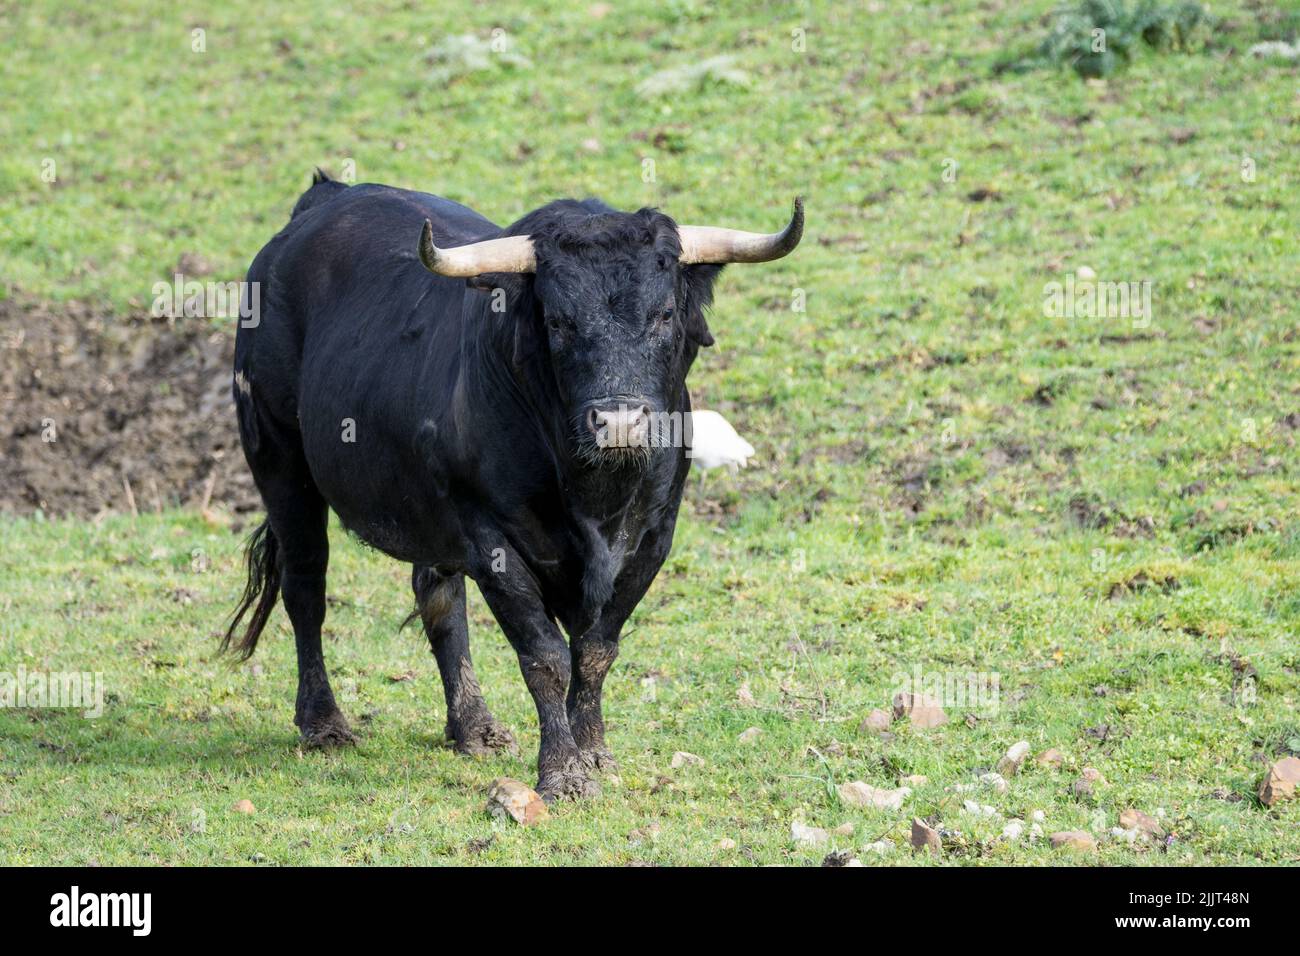 Spanischer Bulle (Toros bravos) auf grüner Wiese. Berühmt durch die traditionellen spanischen Stierkämpfe Stockfoto